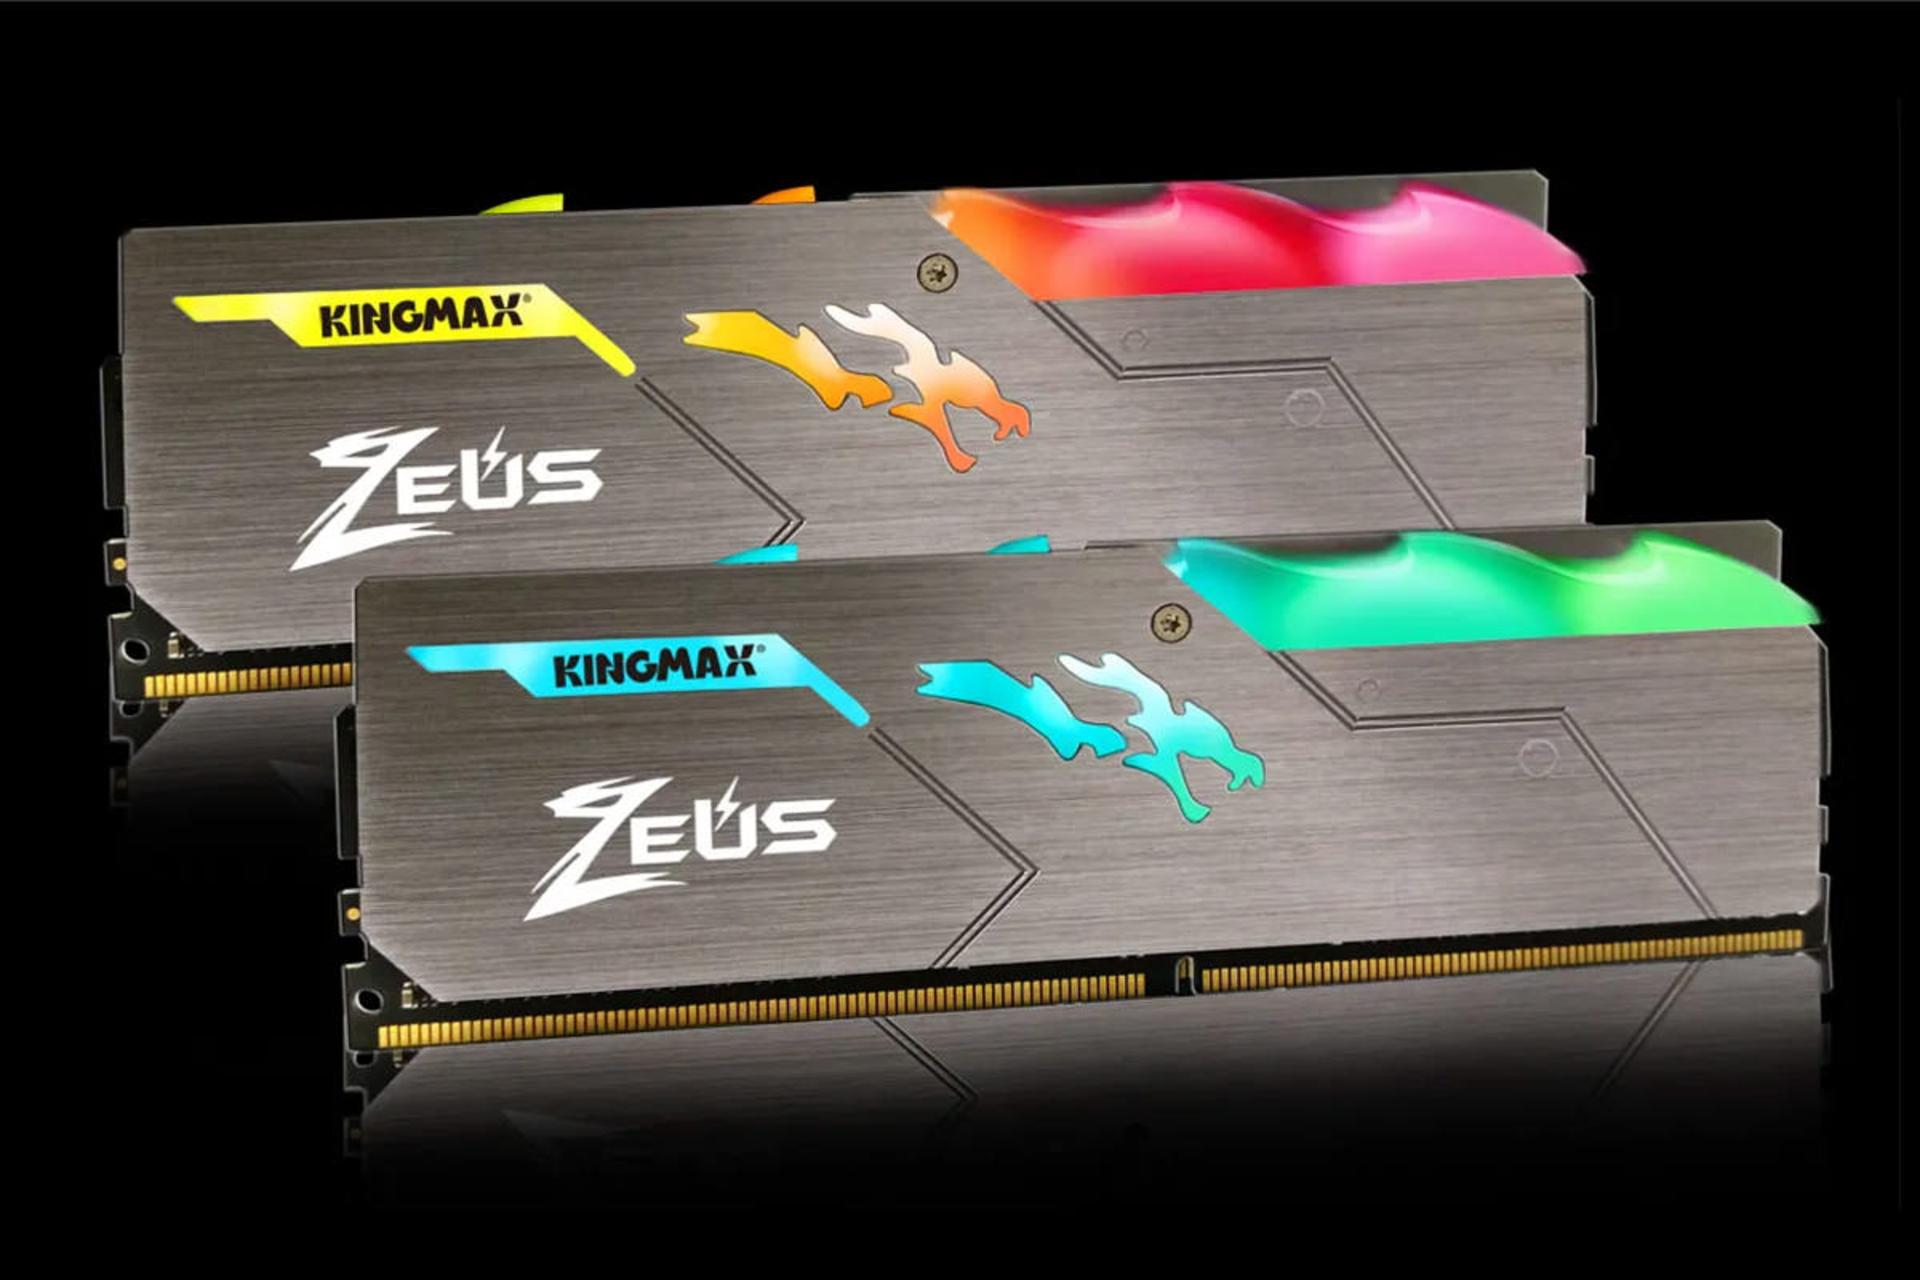 رم کینگ مکس Zeus Dragon RGB ظرفیت 32 گیگابایت (2x16) از نوع DDR4-3200 نمای RGB